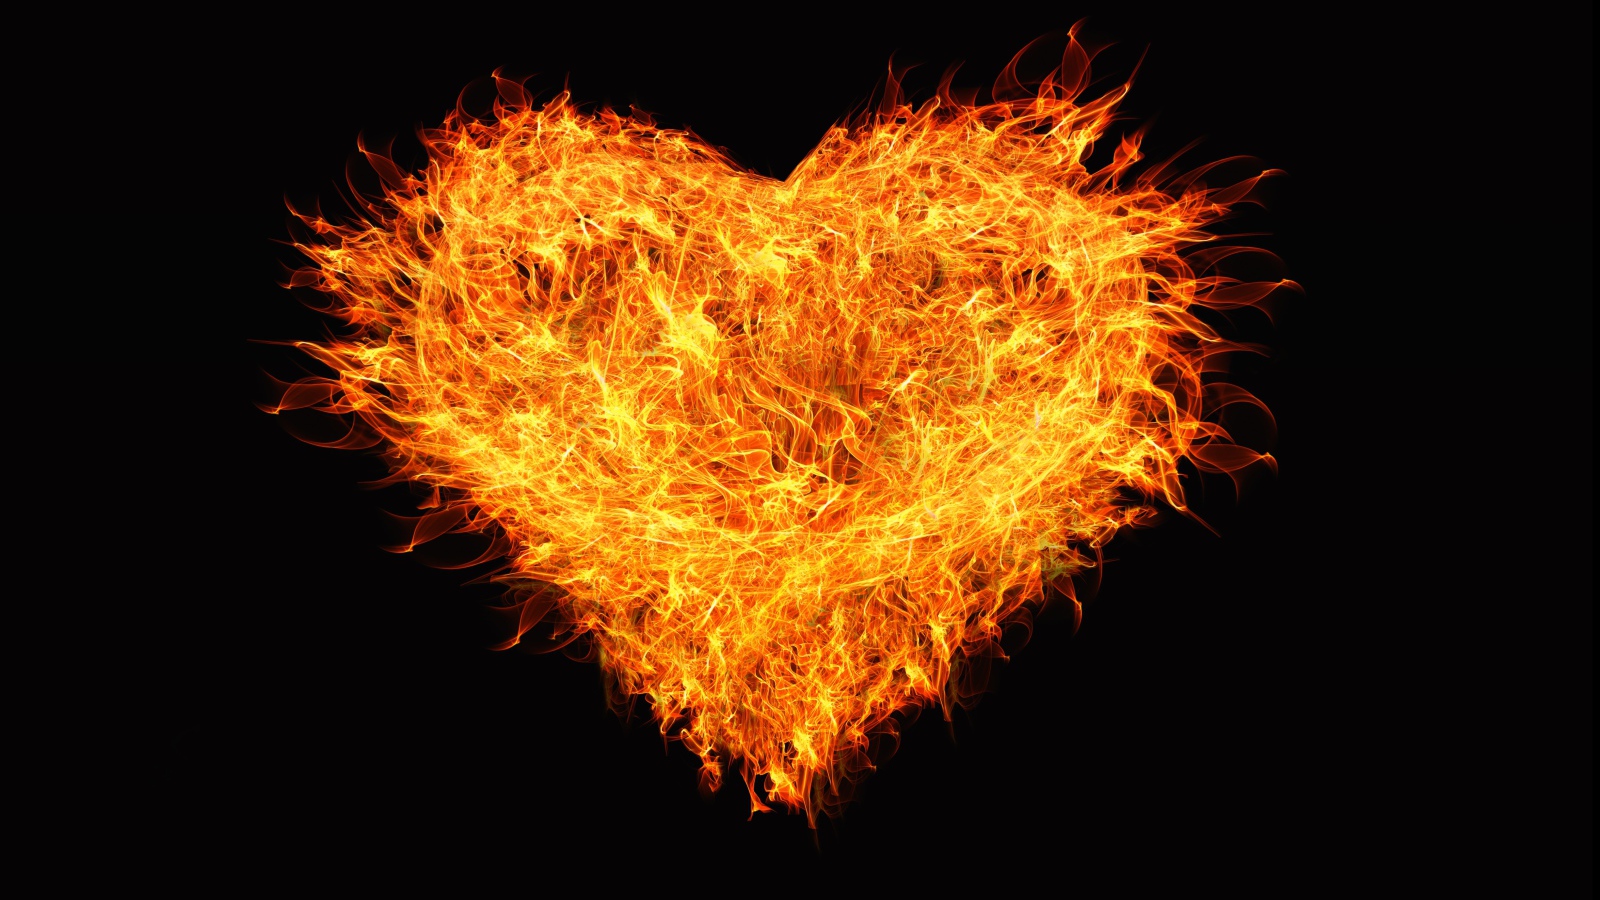 Big fiery heart on black background